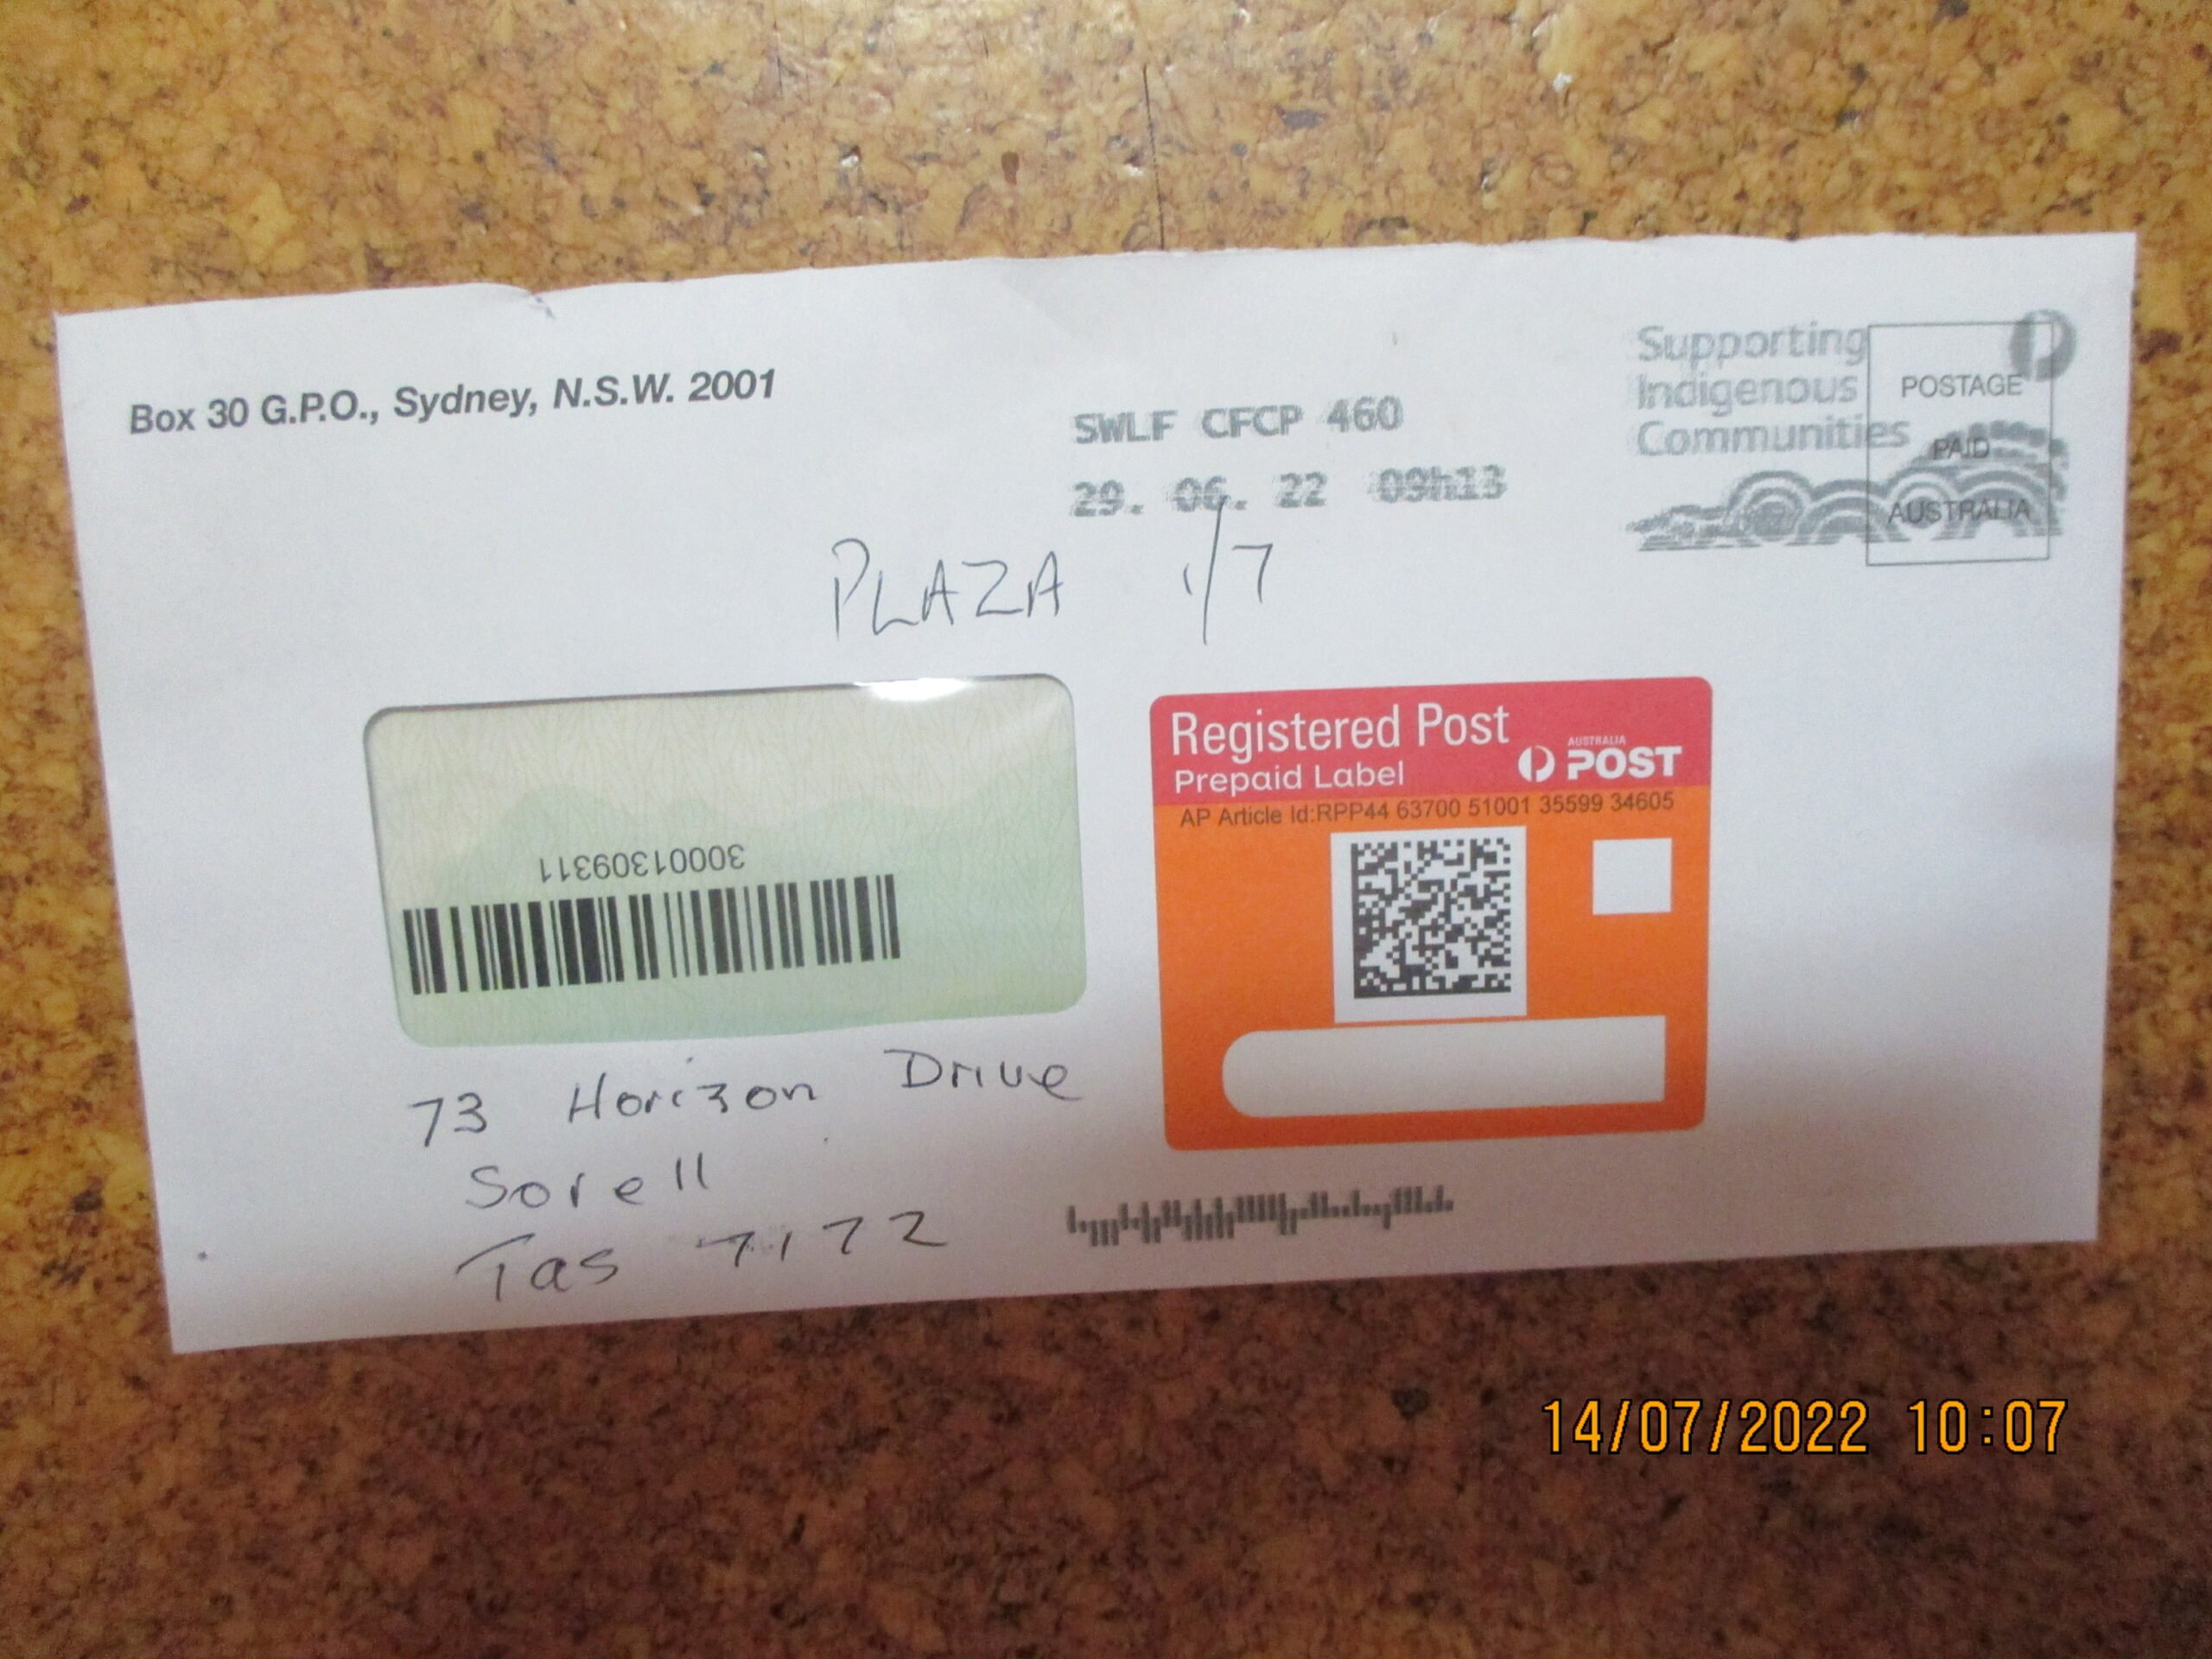 Australia Post complaint Failure to deliver mail